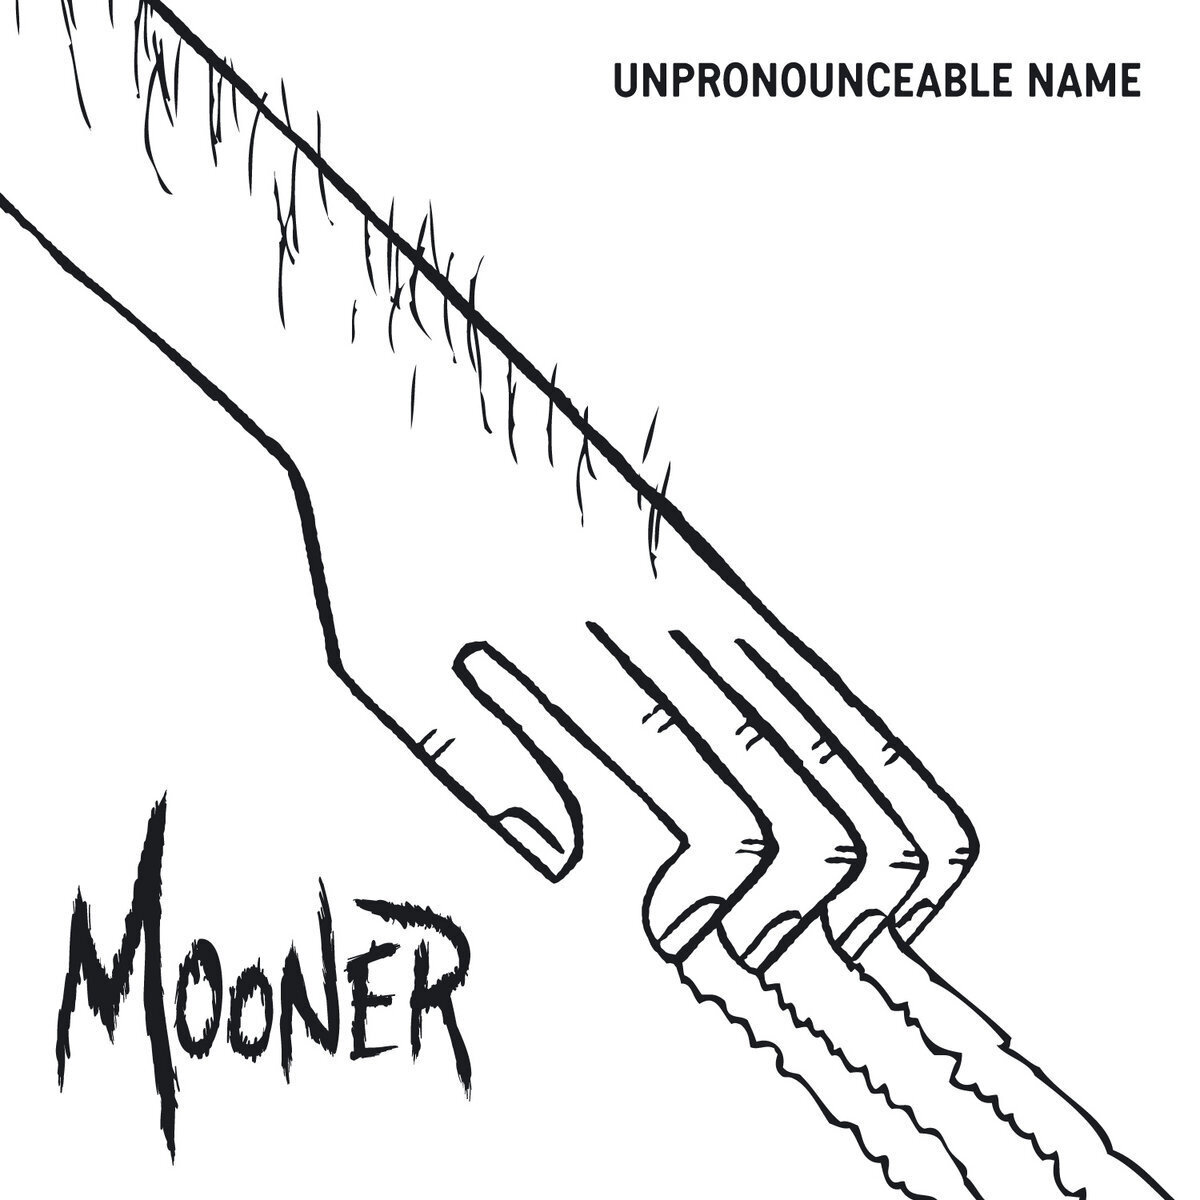 UNPRONOUNCEABLE NAME (2012)